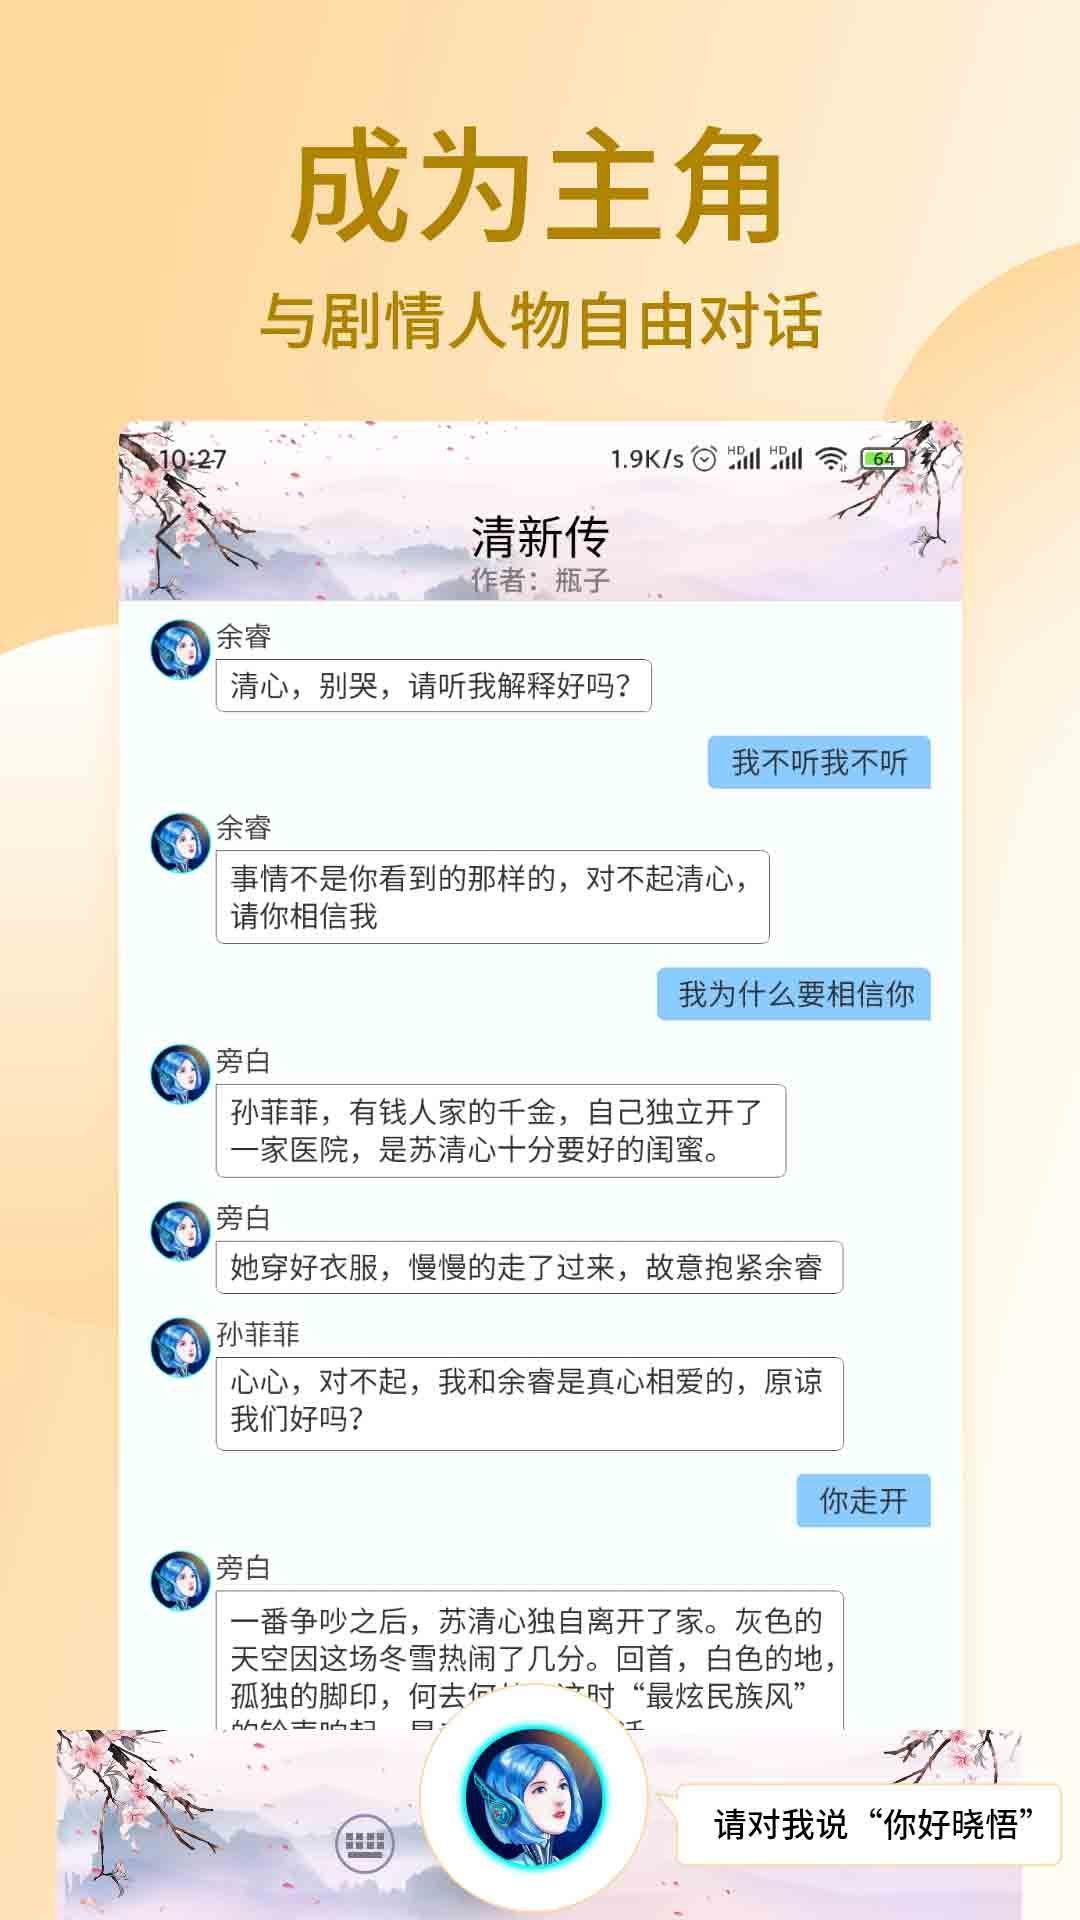 晓悟互动小说app图1